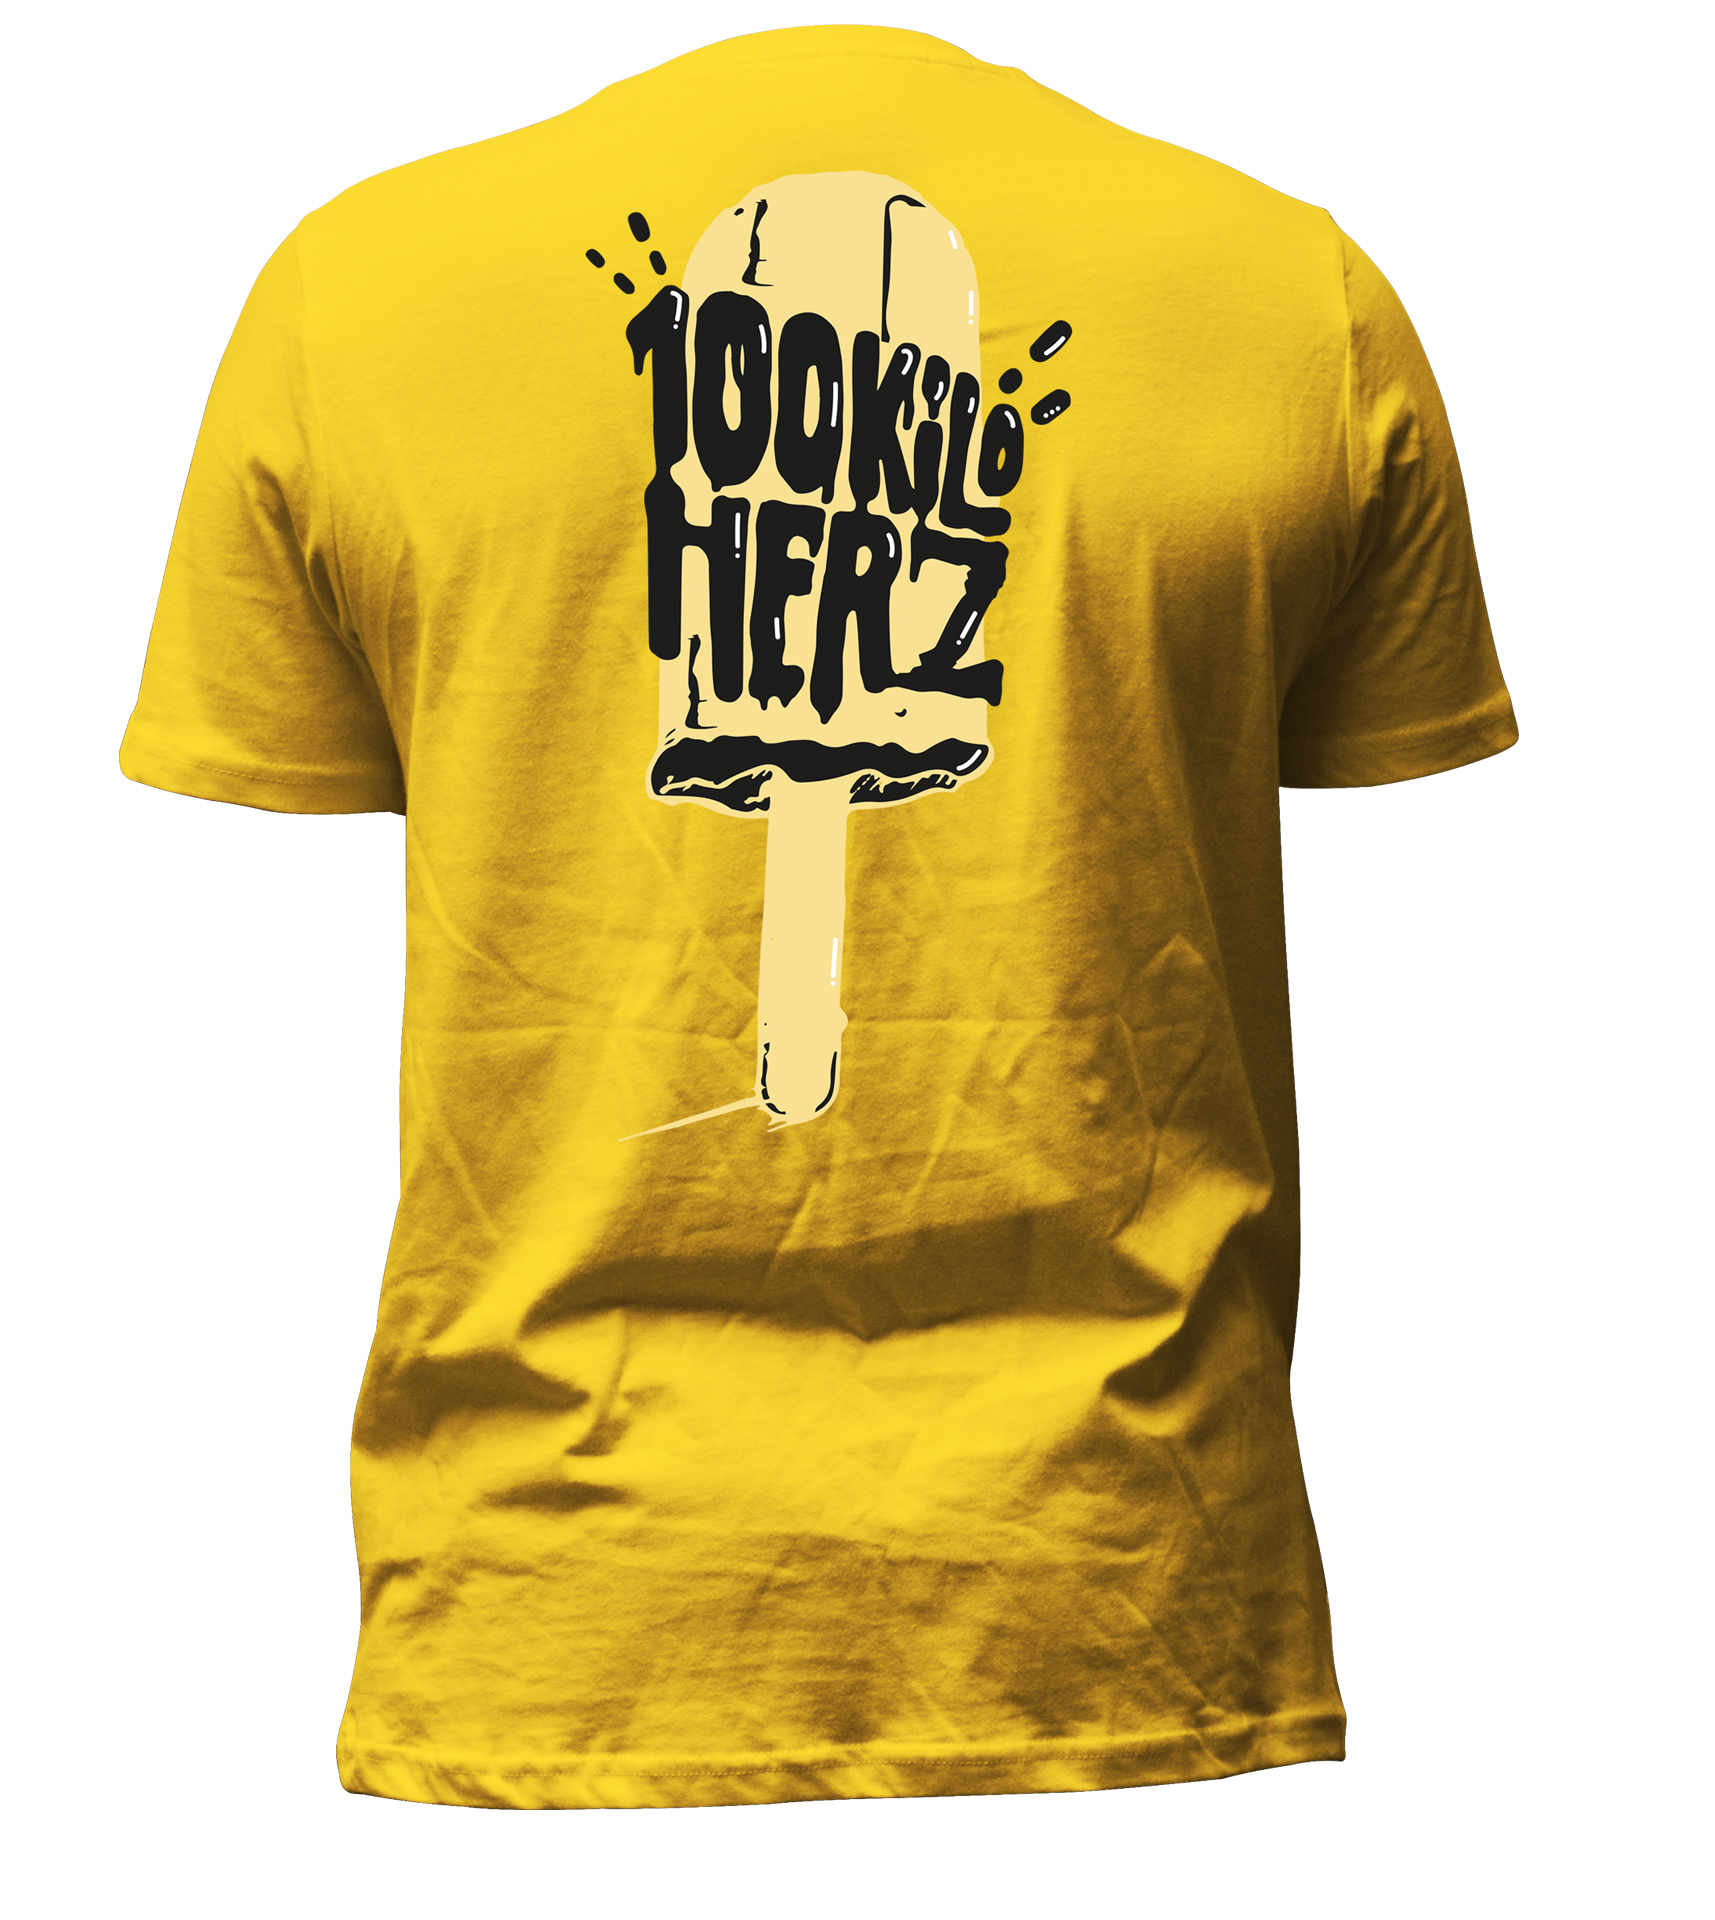 T-Shirt "Zitroneneis"